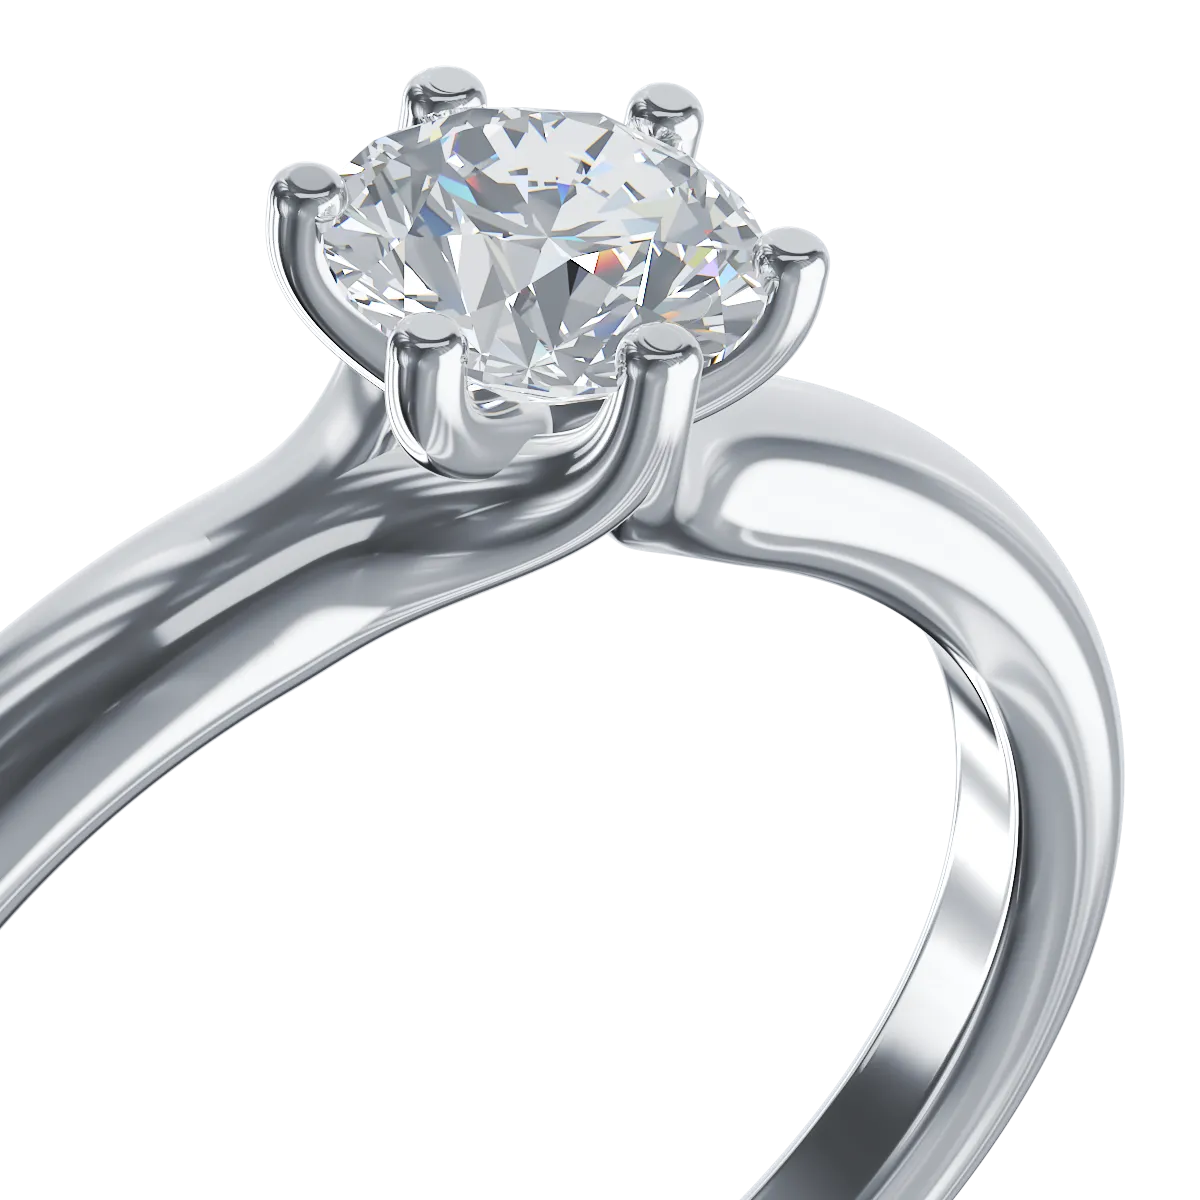 Годежен пръстен от бяло злато 18K с диамант пасианс 0.502ct